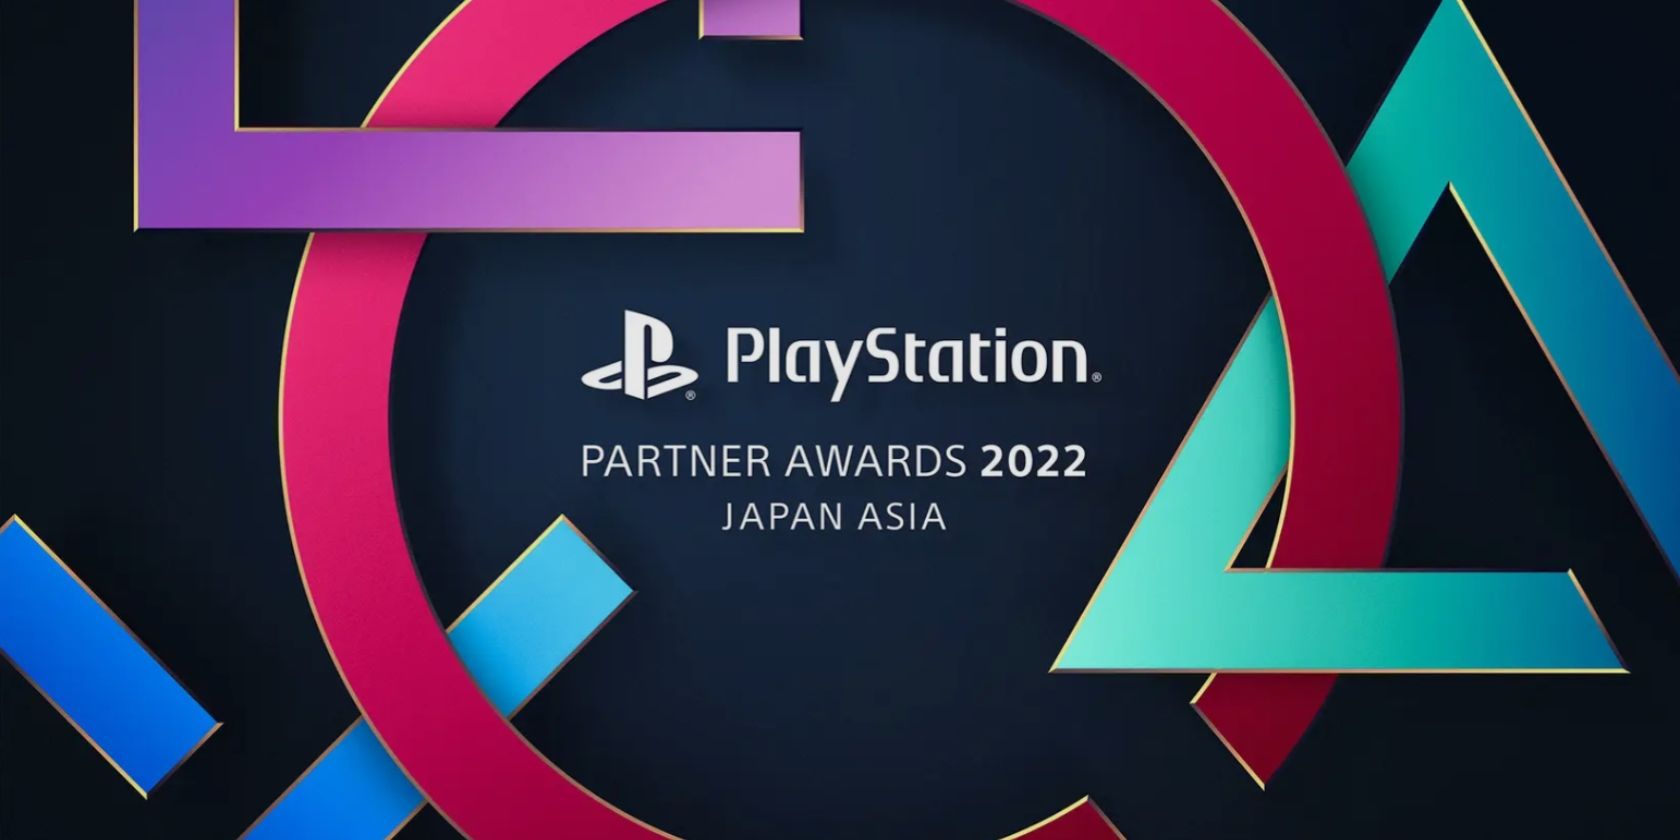 gráfico promocional oficial de PlayStation Partner Awards 2022 con los botones exclusivos de PlayStation